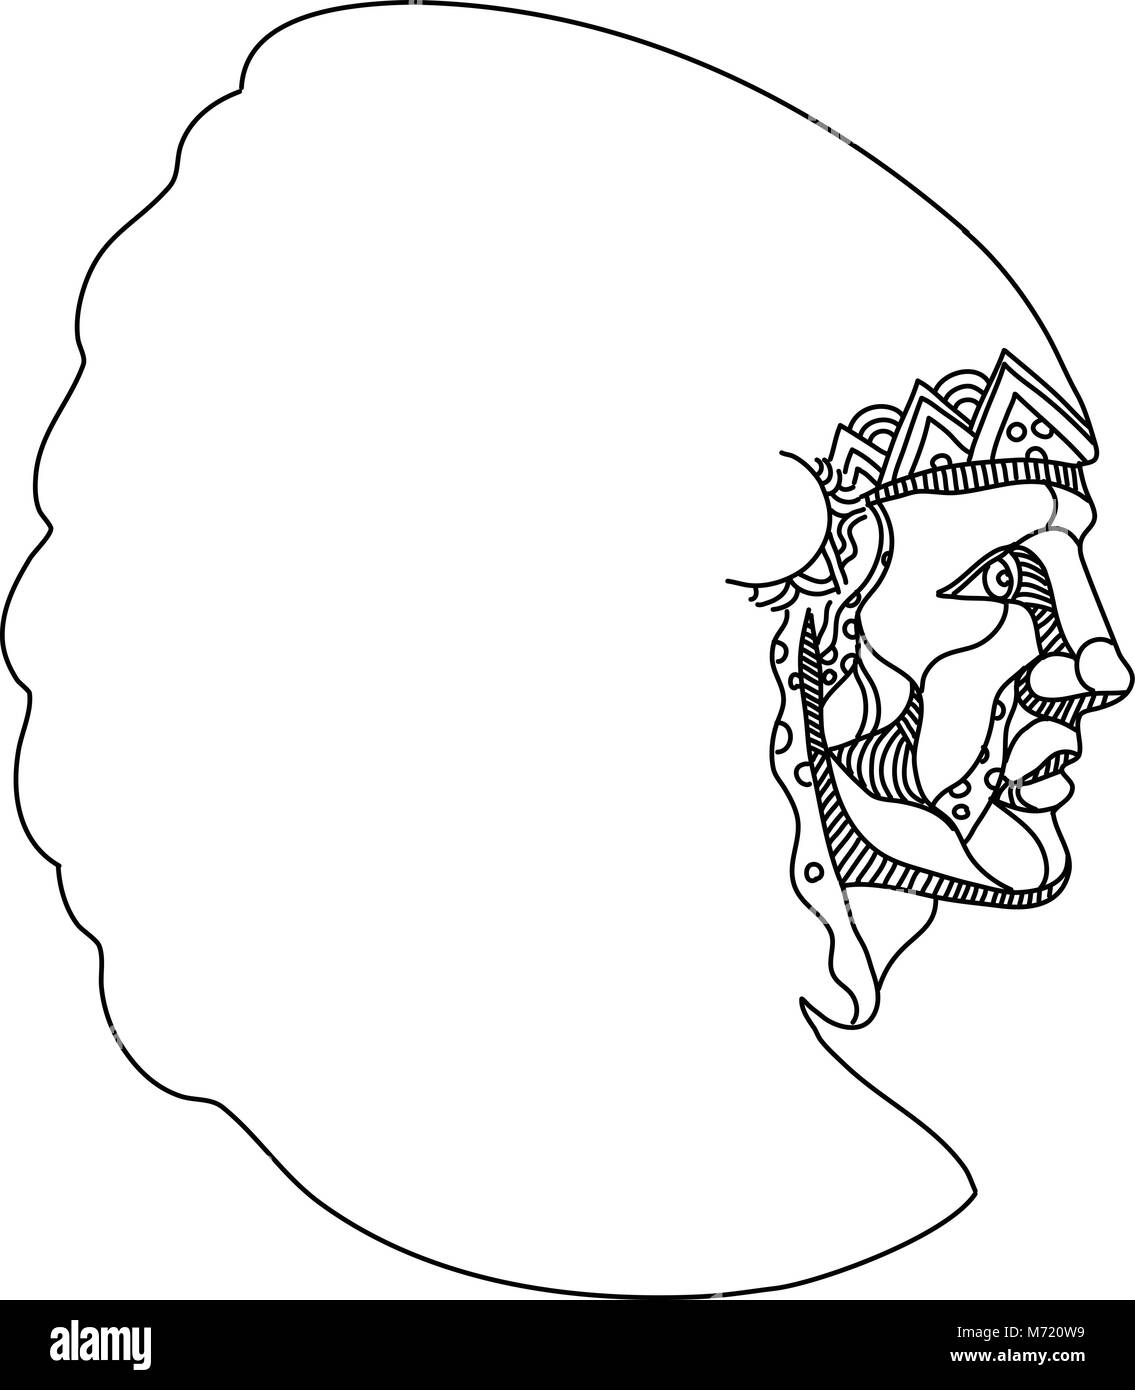 Doodle art Illustration von einem amerikanischen Ureinwohner, Indianer, indische oder indigenen Amerikaner, der indigenen Bevölkerung der Vereinigten Staaten, das Tragen von Krieg Bonn Stock Vektor